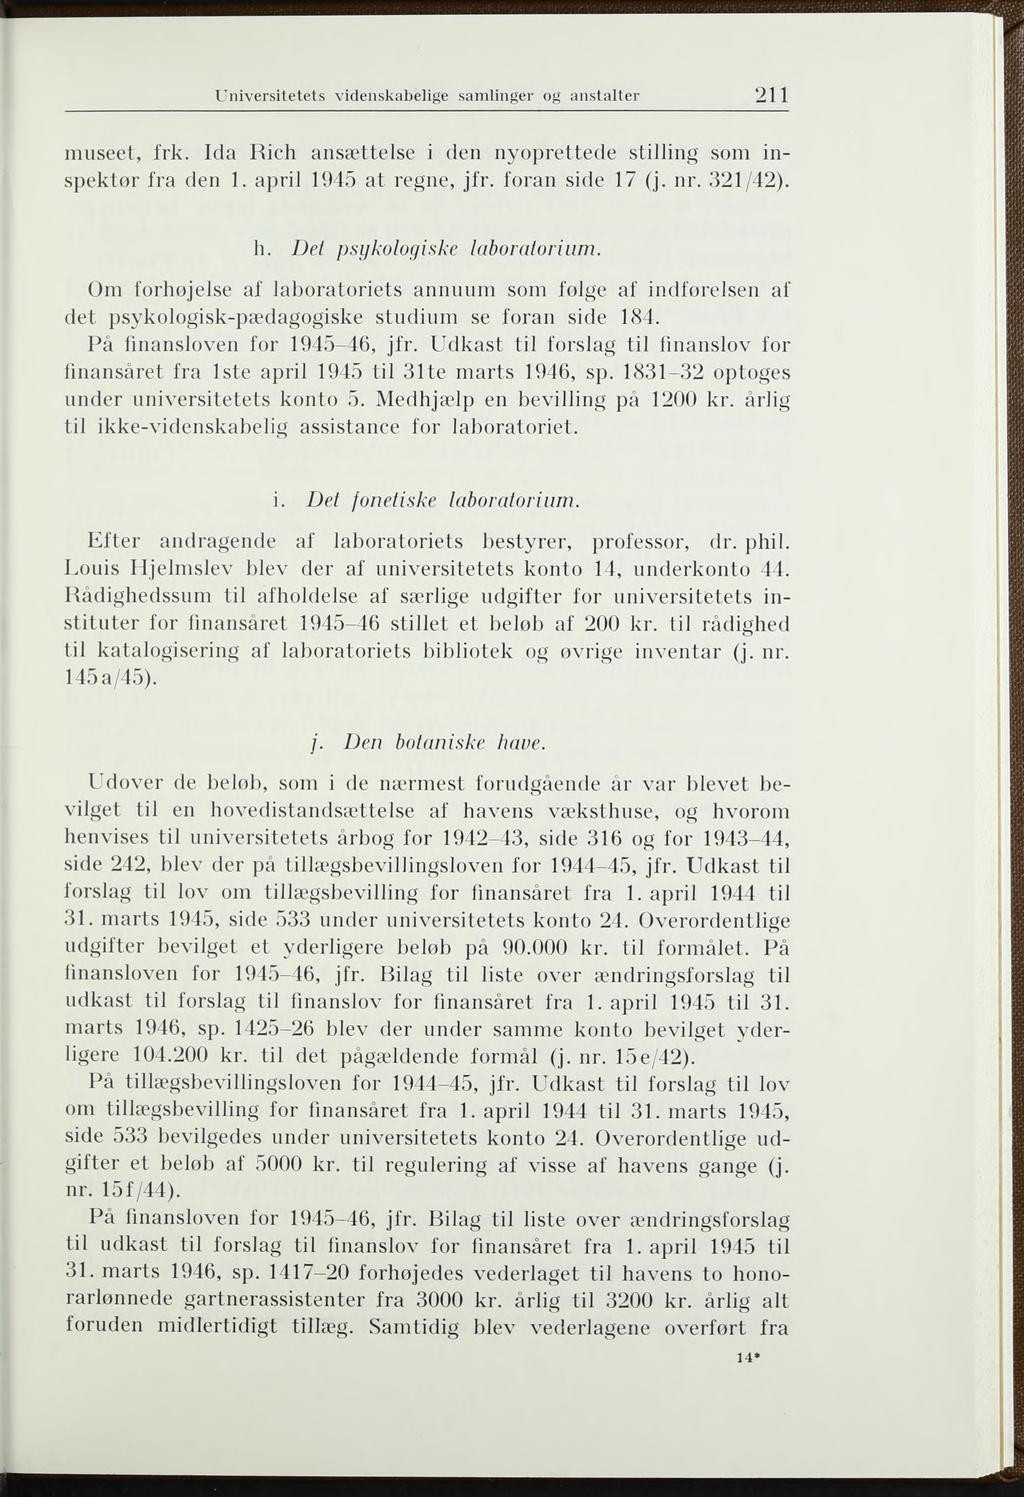 U niversitetets videnskabelige samlinger og anstalter 211 museet, frk. Ida Rieh ansættelse i den nyoprettede stilling som inspektor fra den 1. april 1945 at regne, jfr. foran side 17 (j. nr. 321/42).